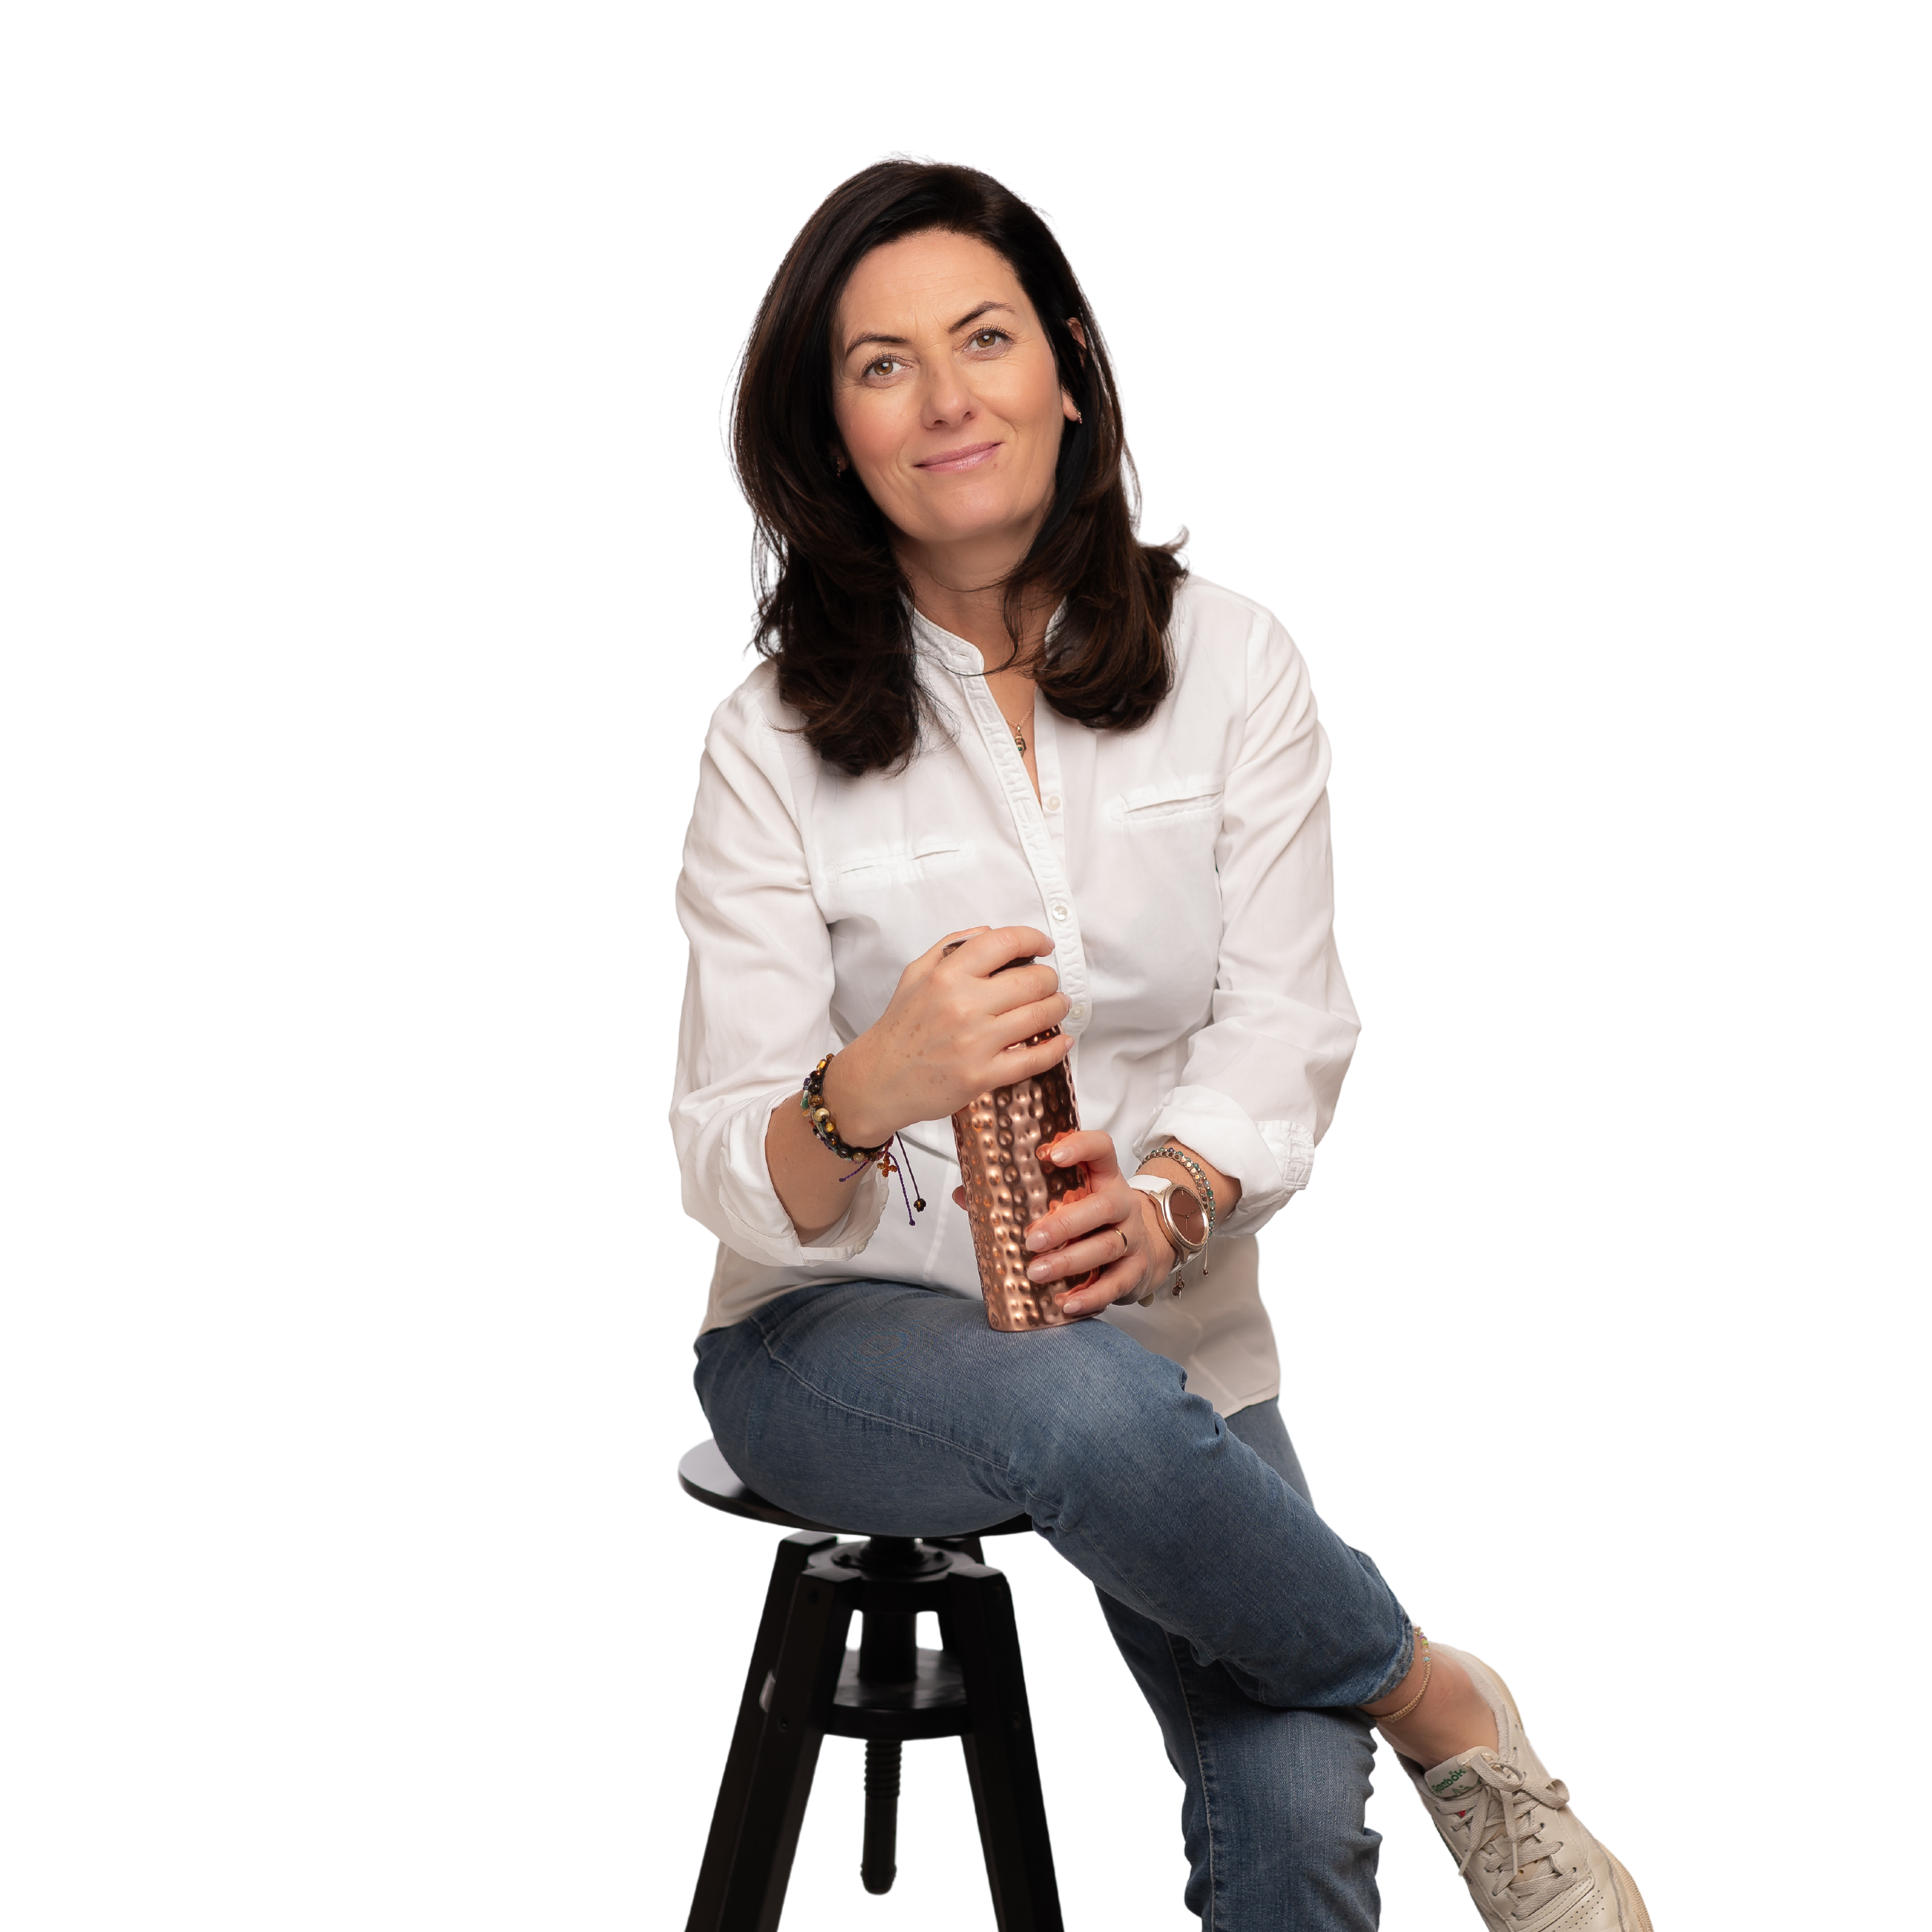 Tekst alternatywny: Uśmiechnięta kobieta w białej koszuli i niebieskich jeansach siedzi na czarnym stołku, trzymając miedzianą butelkę w dłoniach.